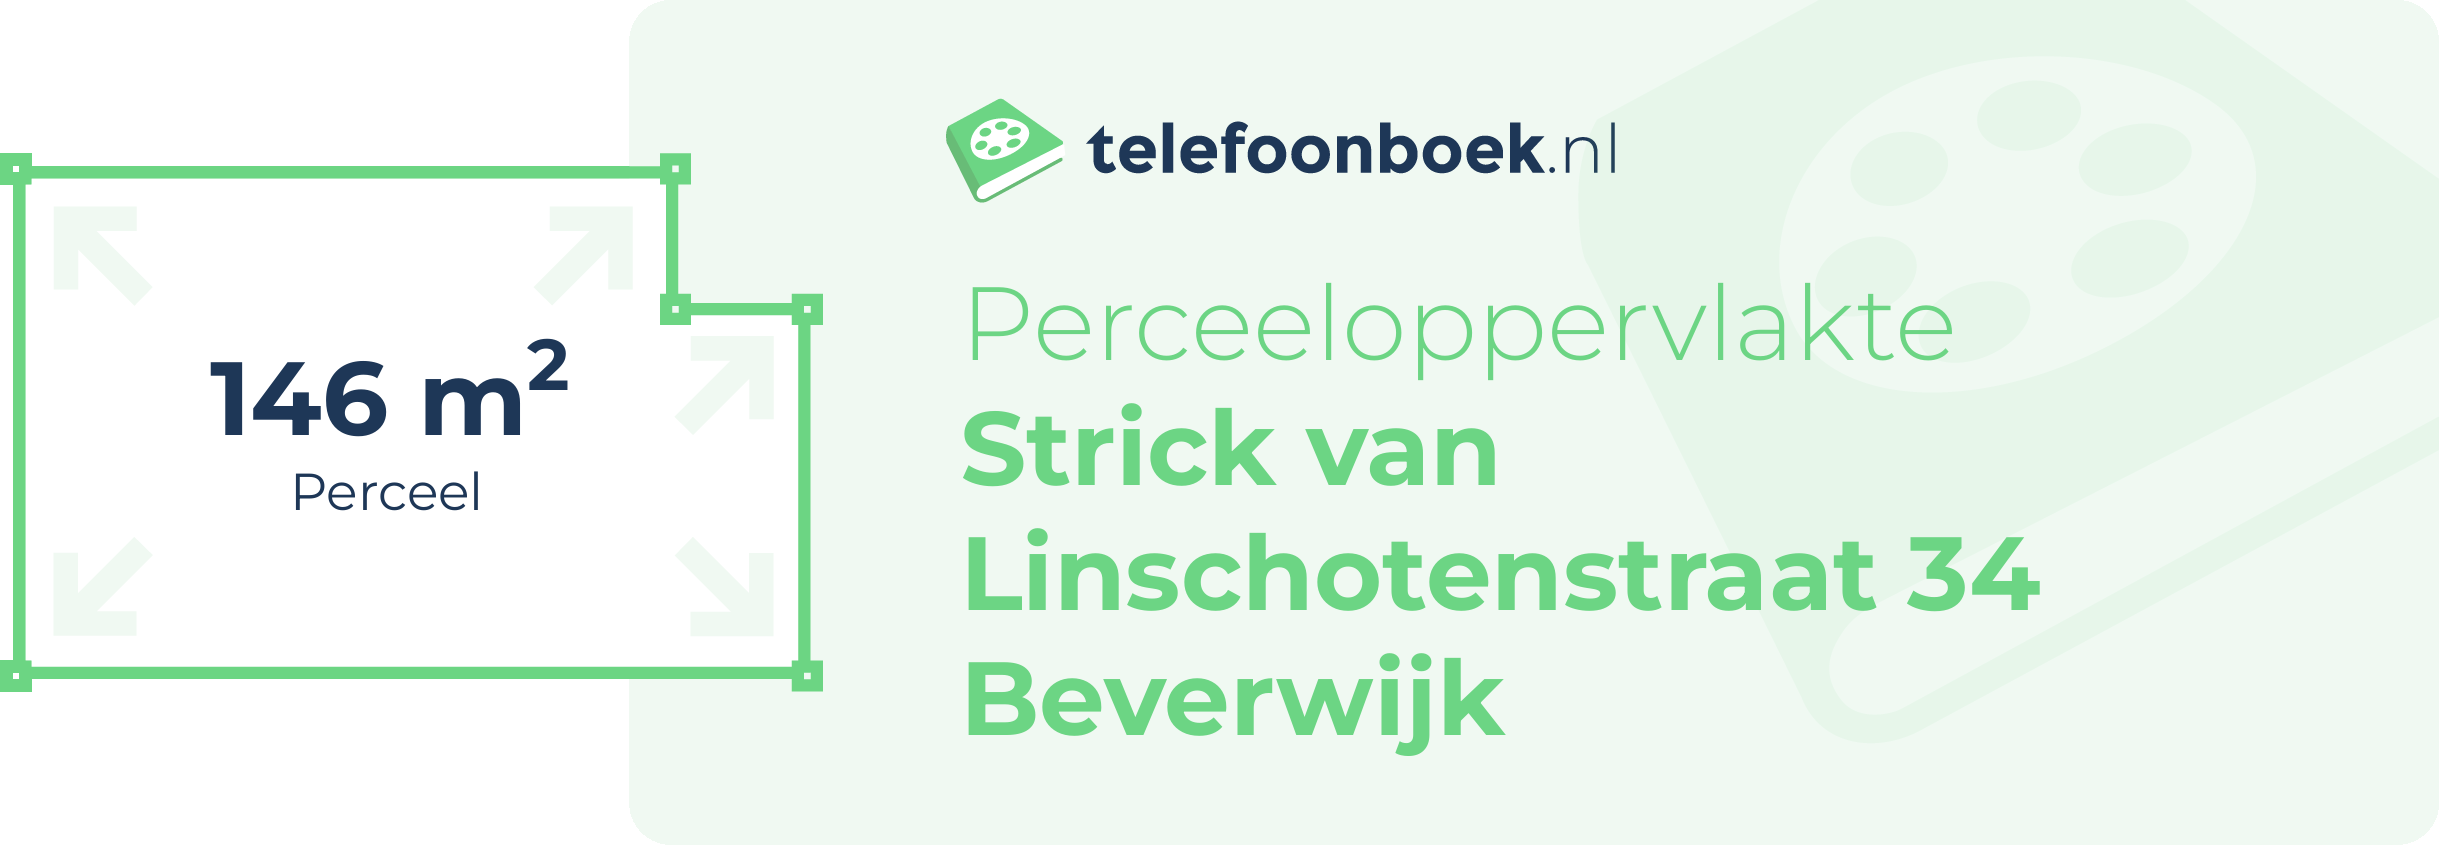 Perceeloppervlakte Strick Van Linschotenstraat 34 Beverwijk